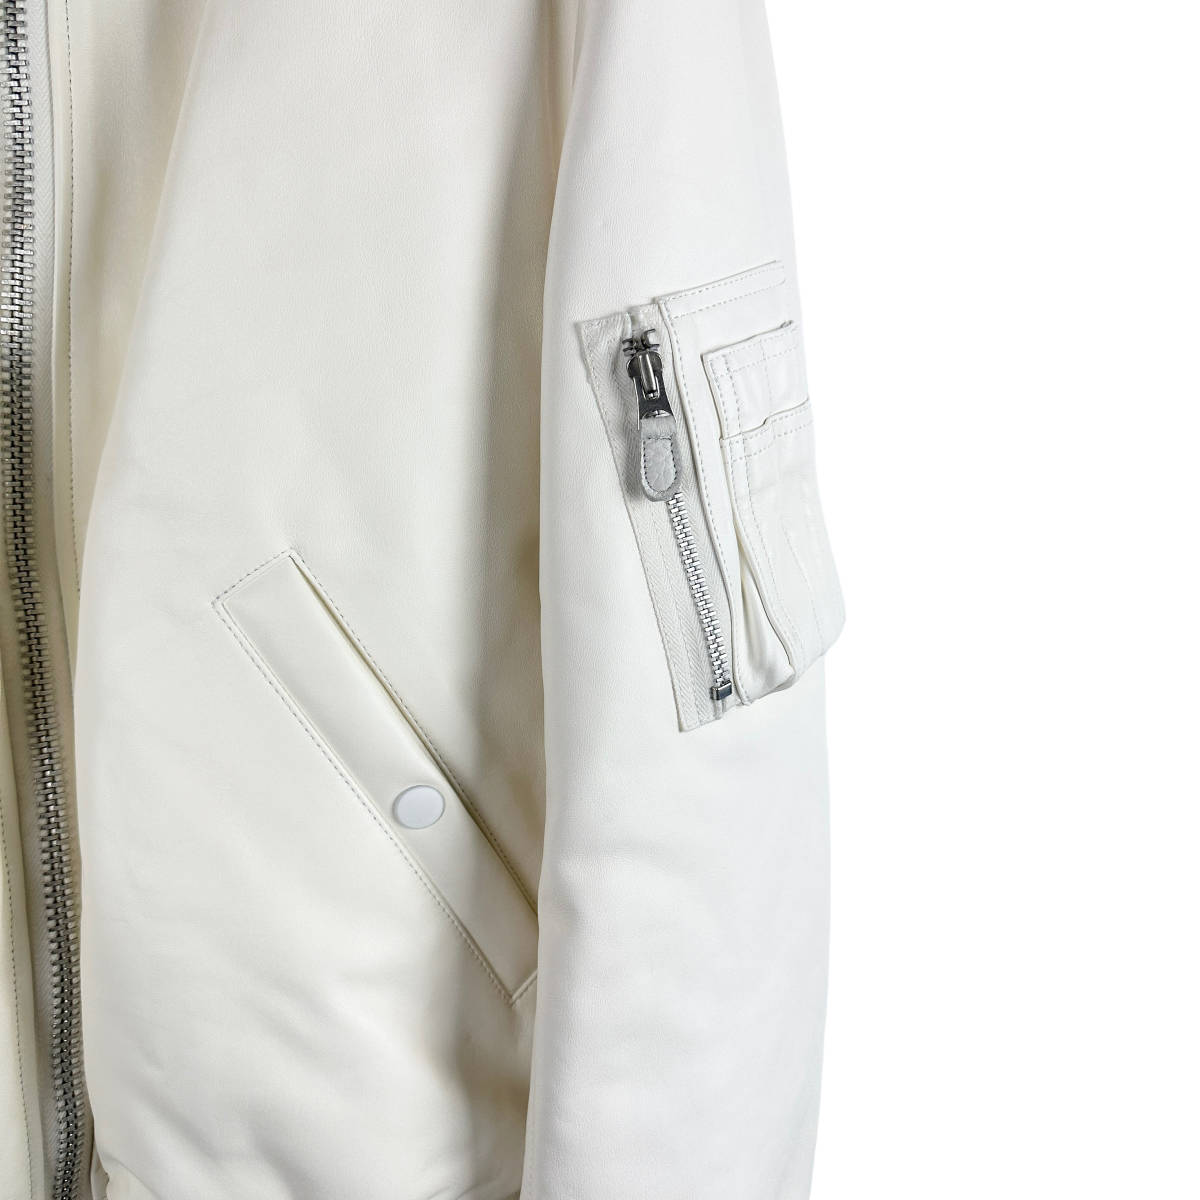 COMOLI (コモリ) leather bomber jacket (white)